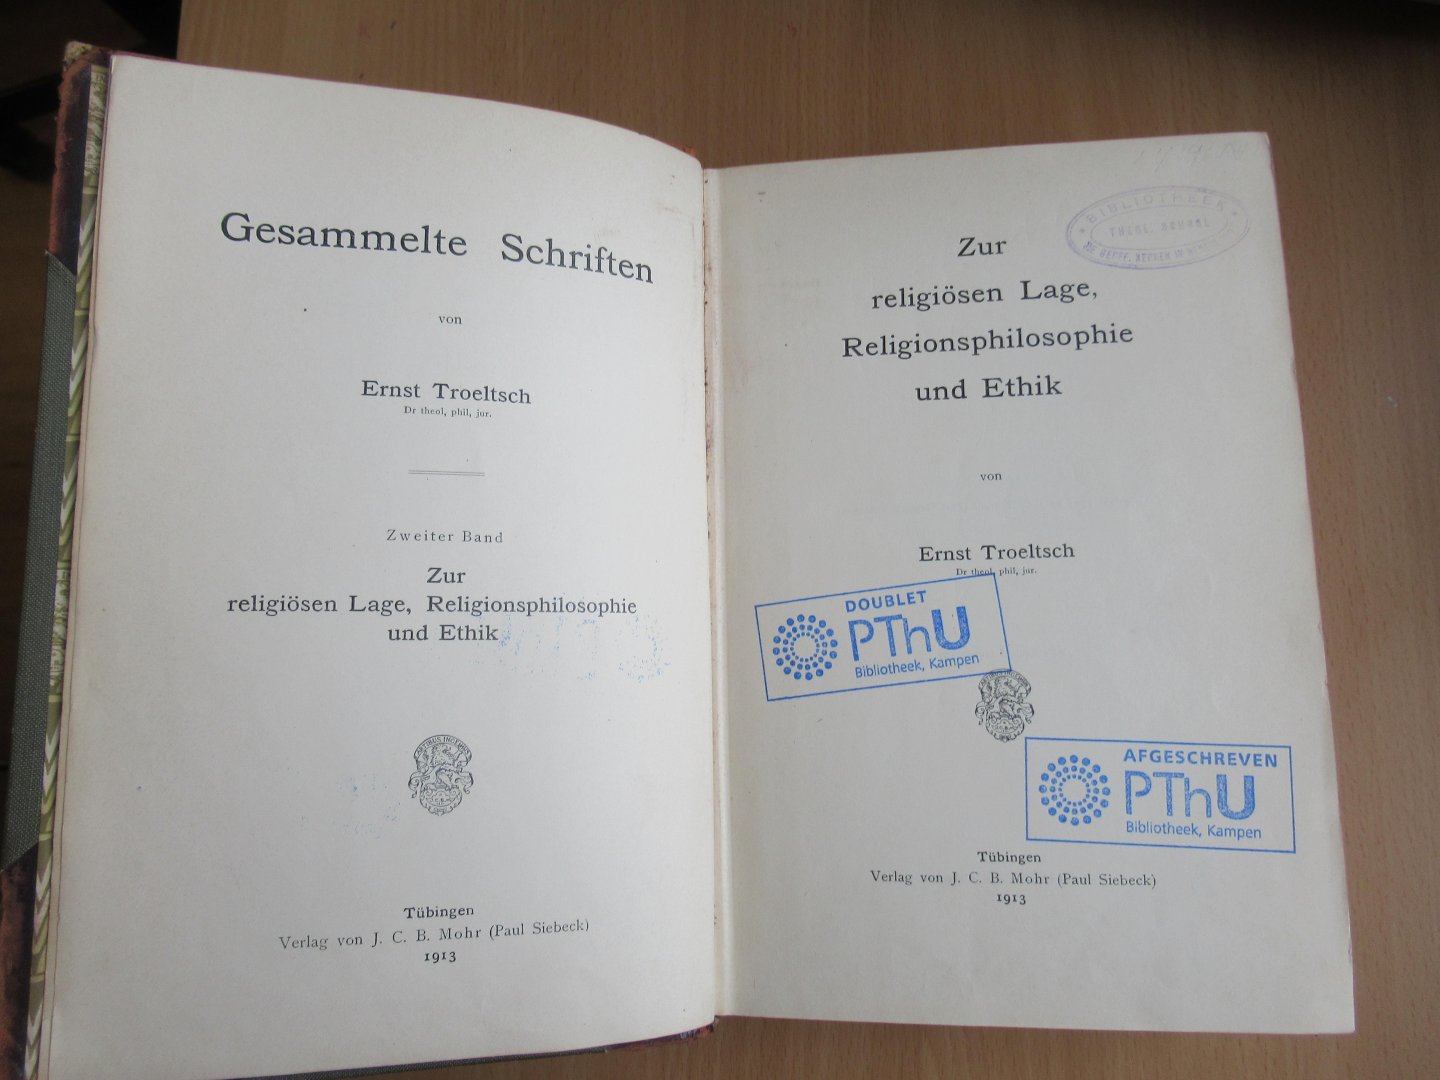 Troeltsch Ernst  Dr. theol phil, jur. - Zur religiosen Lage, Religionsphilosophie und Ethik